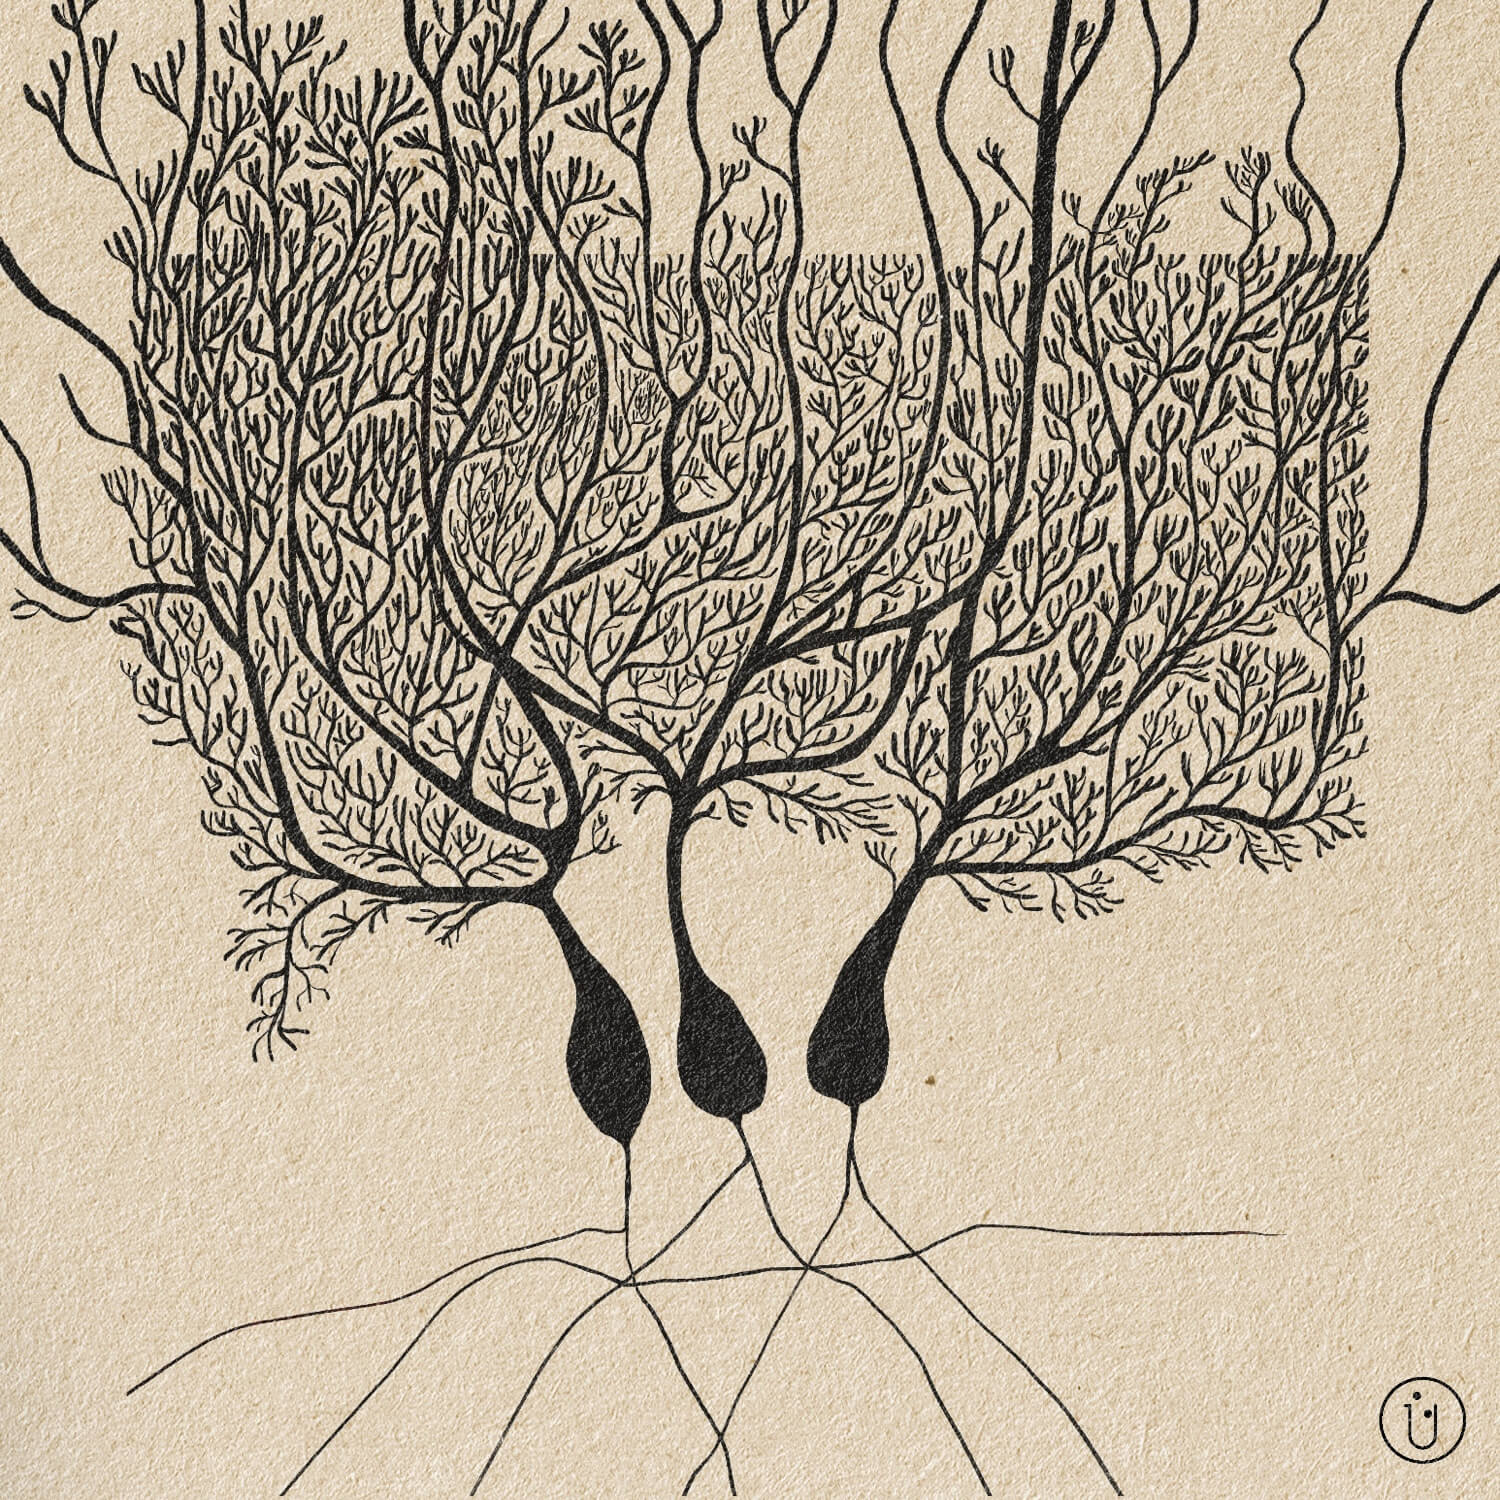 Der Prozess einer künstlerischen Interpretation von Purkinje Neuronen. Sichtbar sind drei Zellkörper mit ausgiebigen Dendritenbäumen, gezeichnet mit schwarz auf beigem Zeitungspapier.